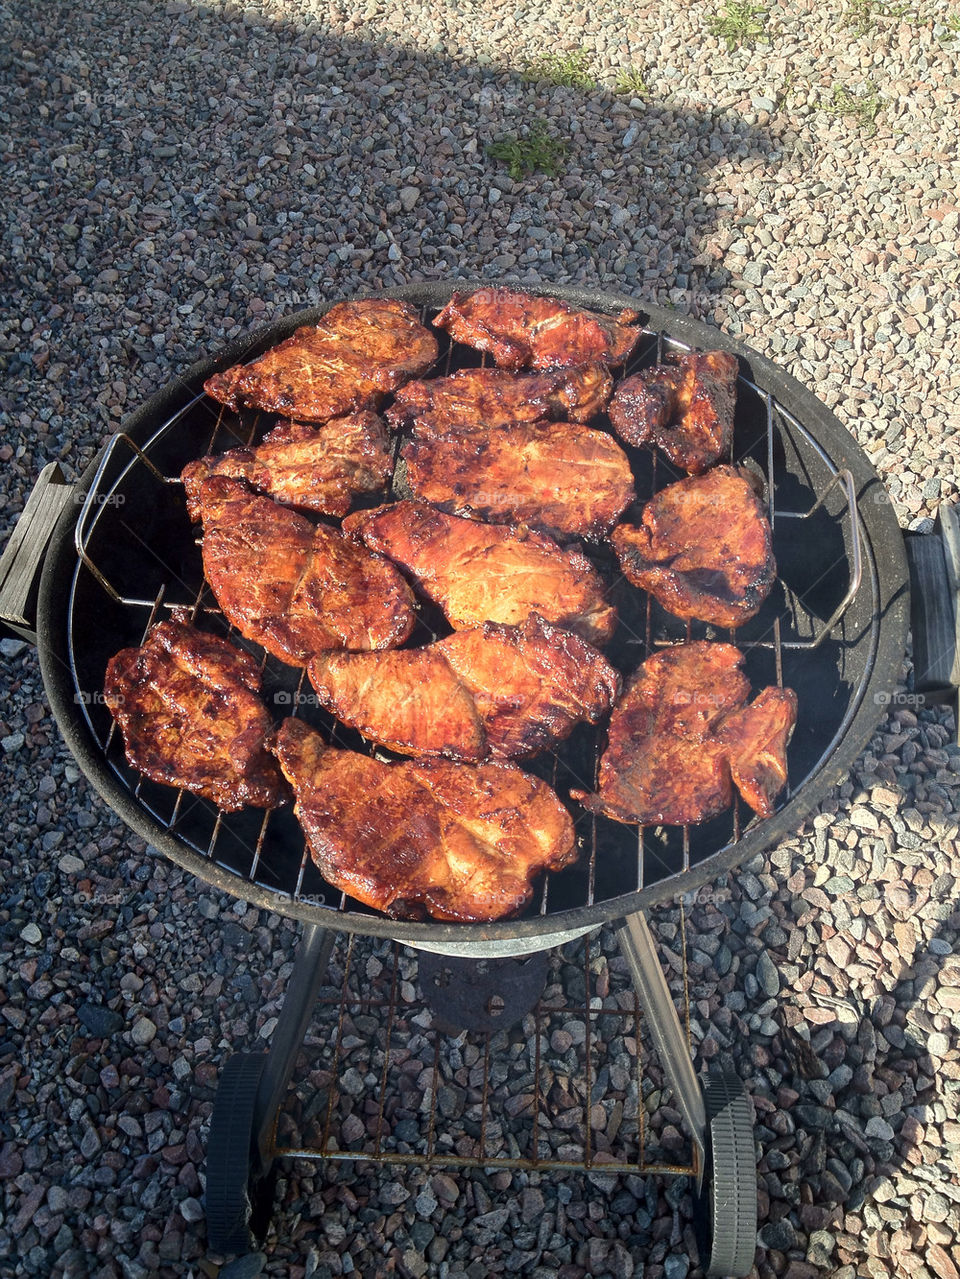 sweden grill meat östervåla by puckot44